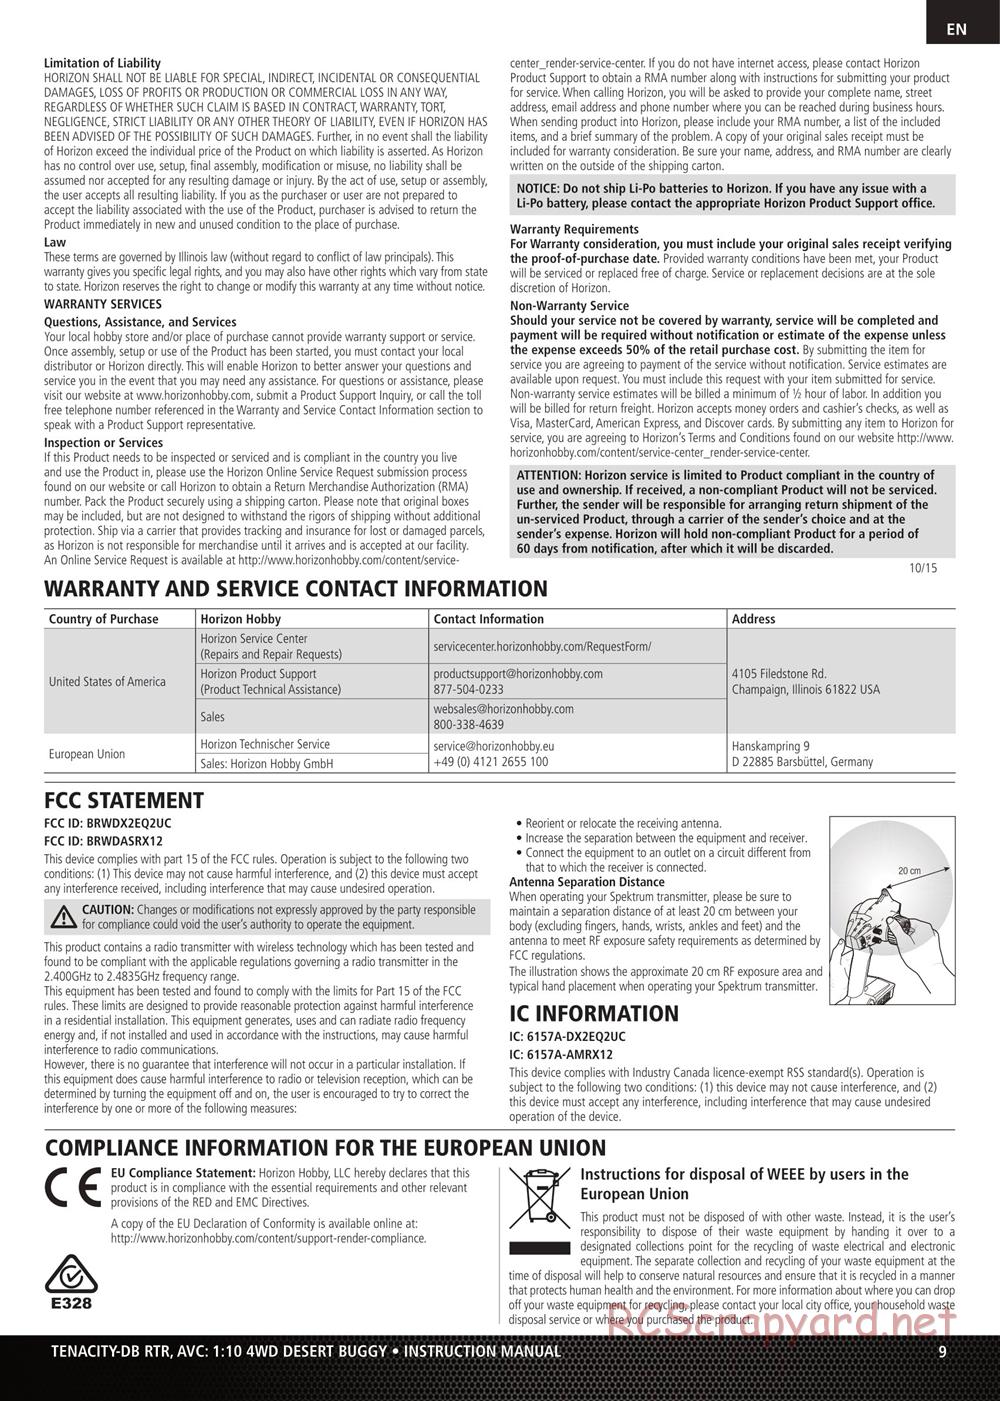 Team Losi - Tenacity-DB - Manual - Page 9